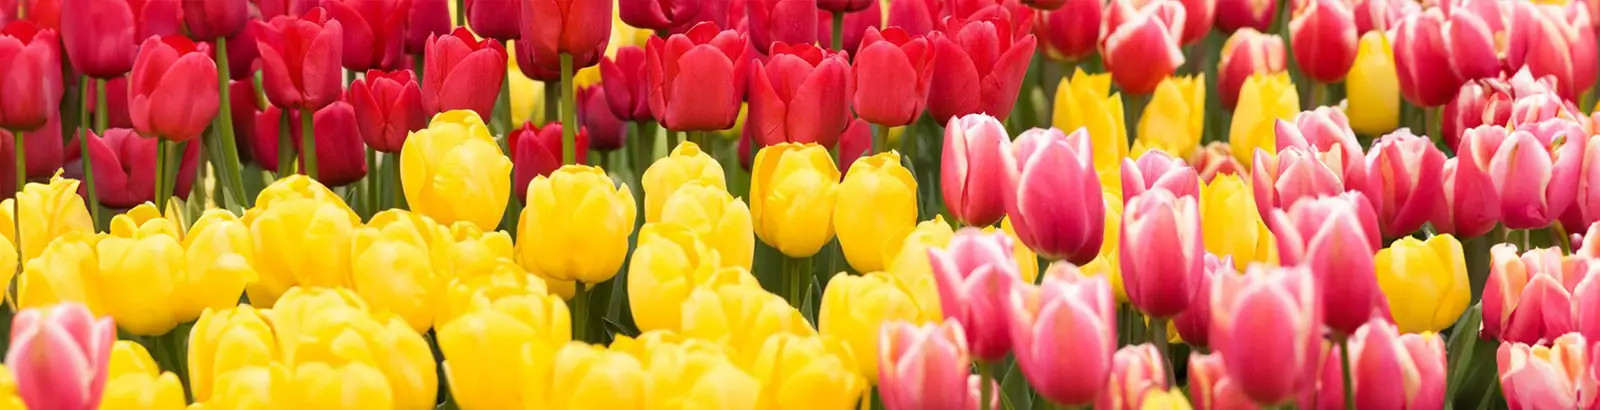 Nahaufnahme eines Tulpenfeldes mit roten, gelben und rosafarbenen Tulpen.